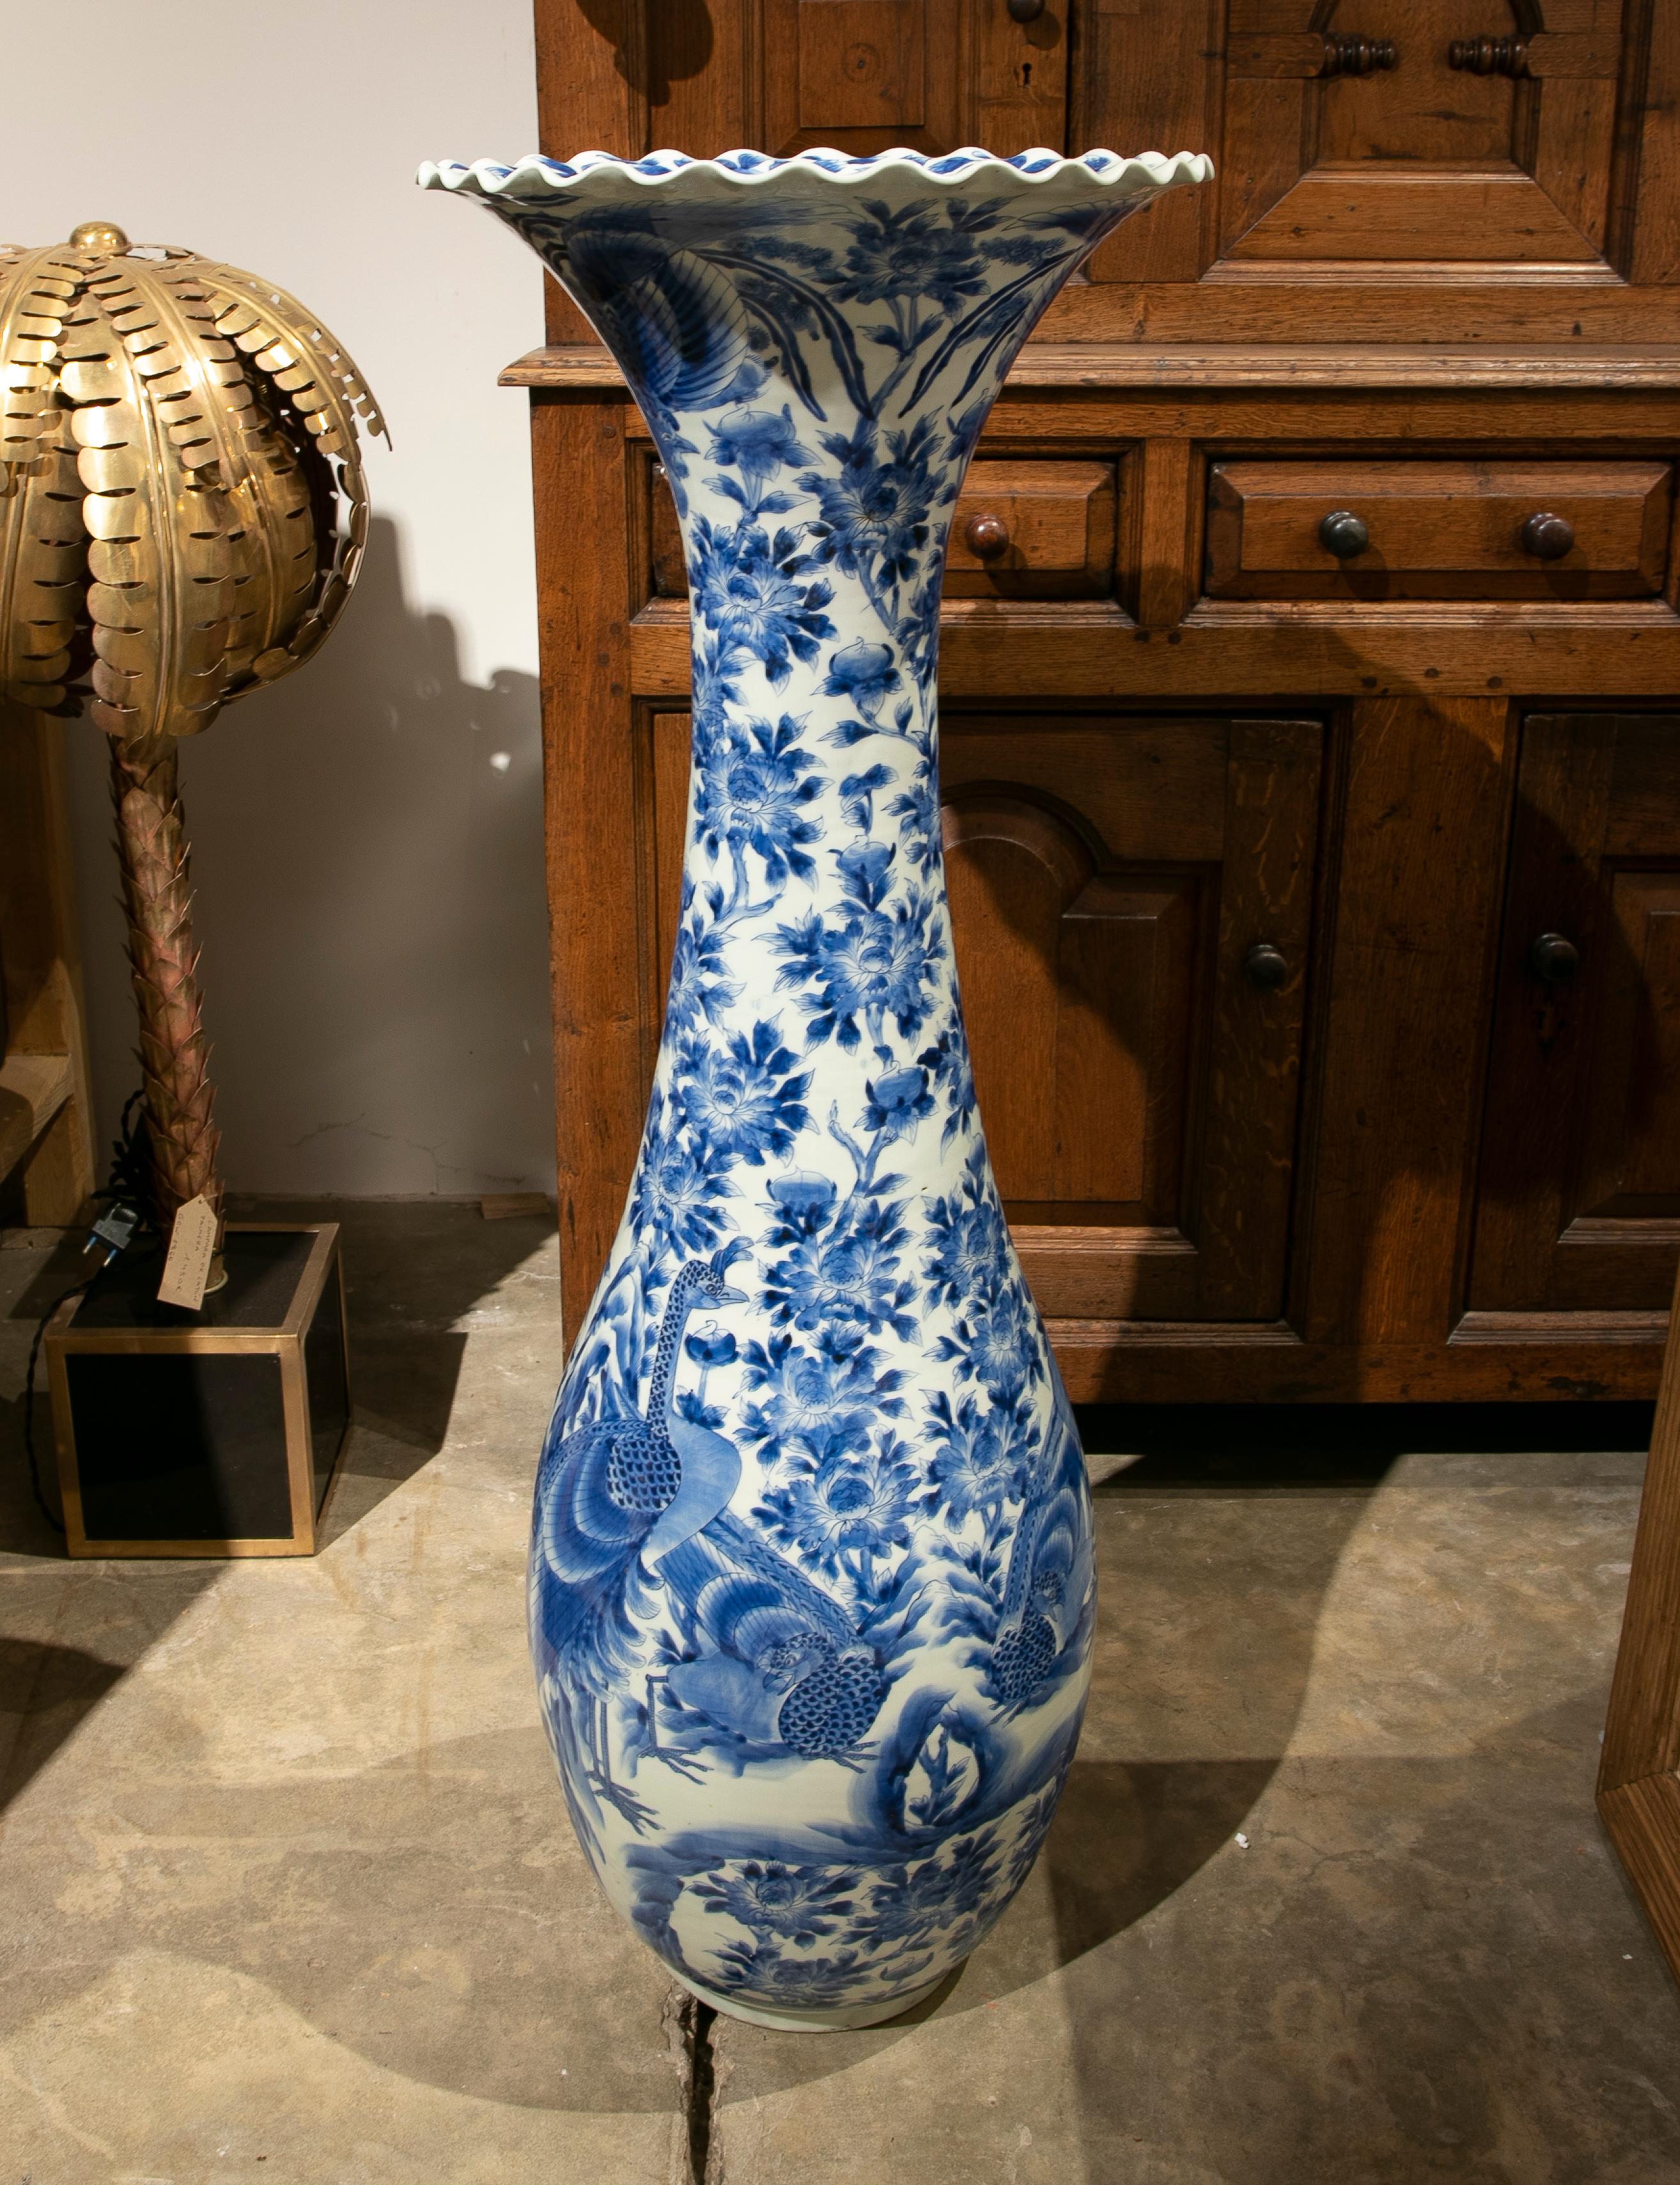 1970s white and blue porcelain floor vase.